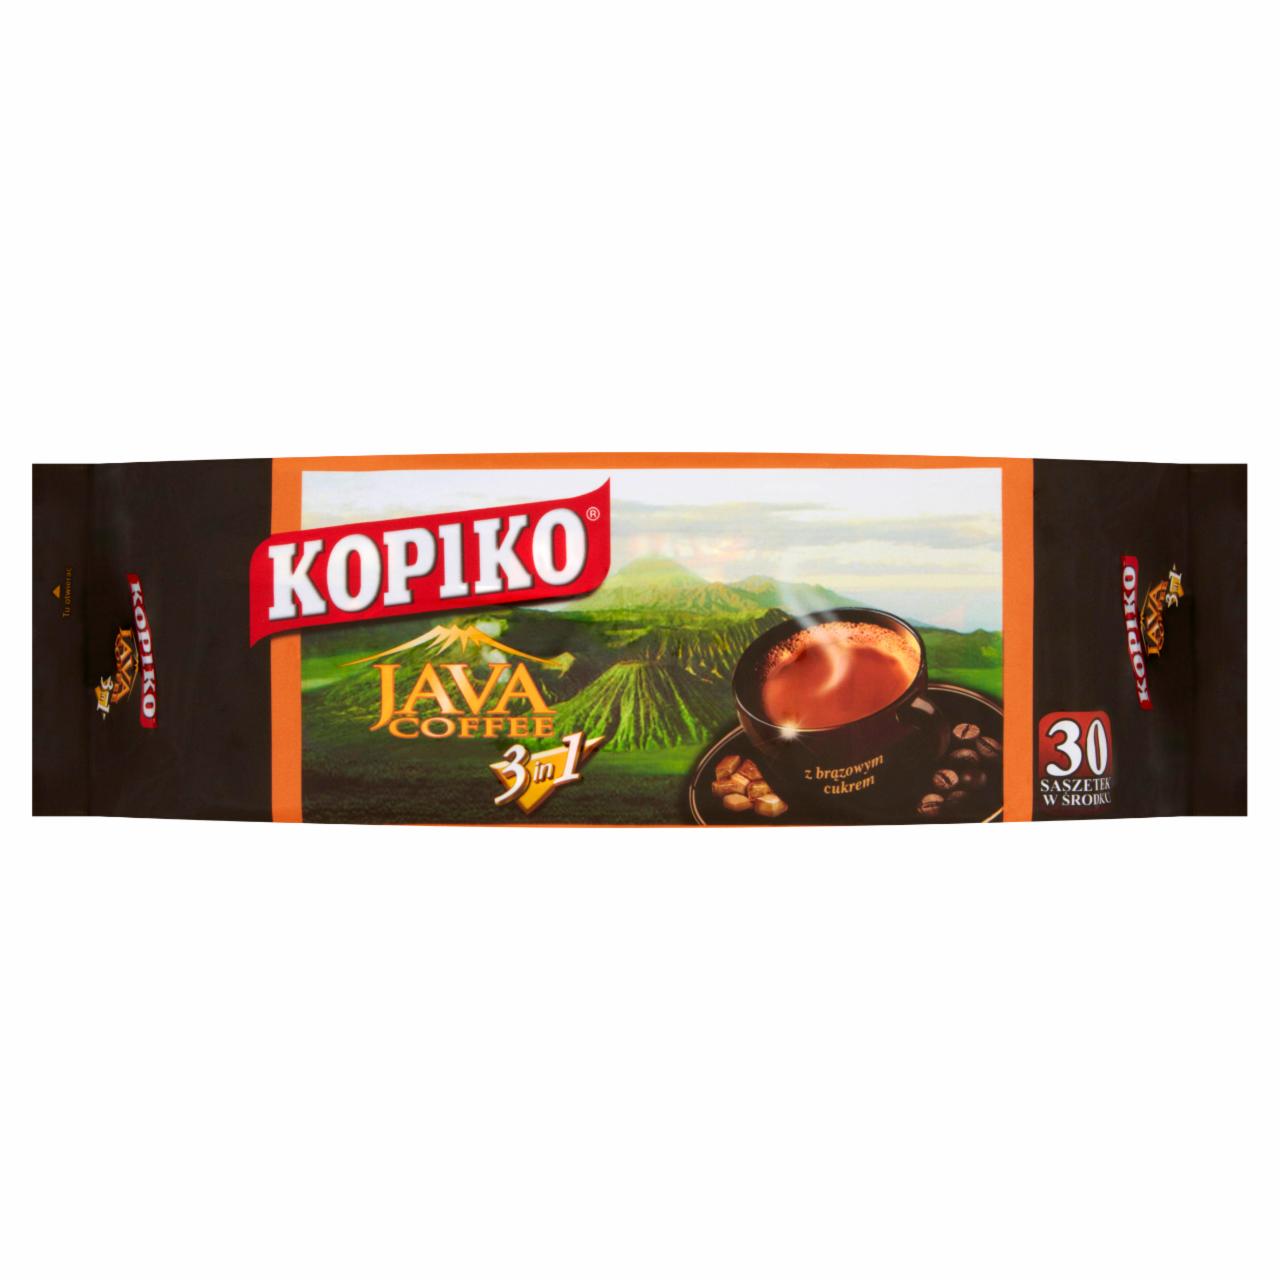 Zdjęcia - Kopiko Java Coffee 3in1 Rozpuszczalny napój kawowy 630 g (30 x 21 g)